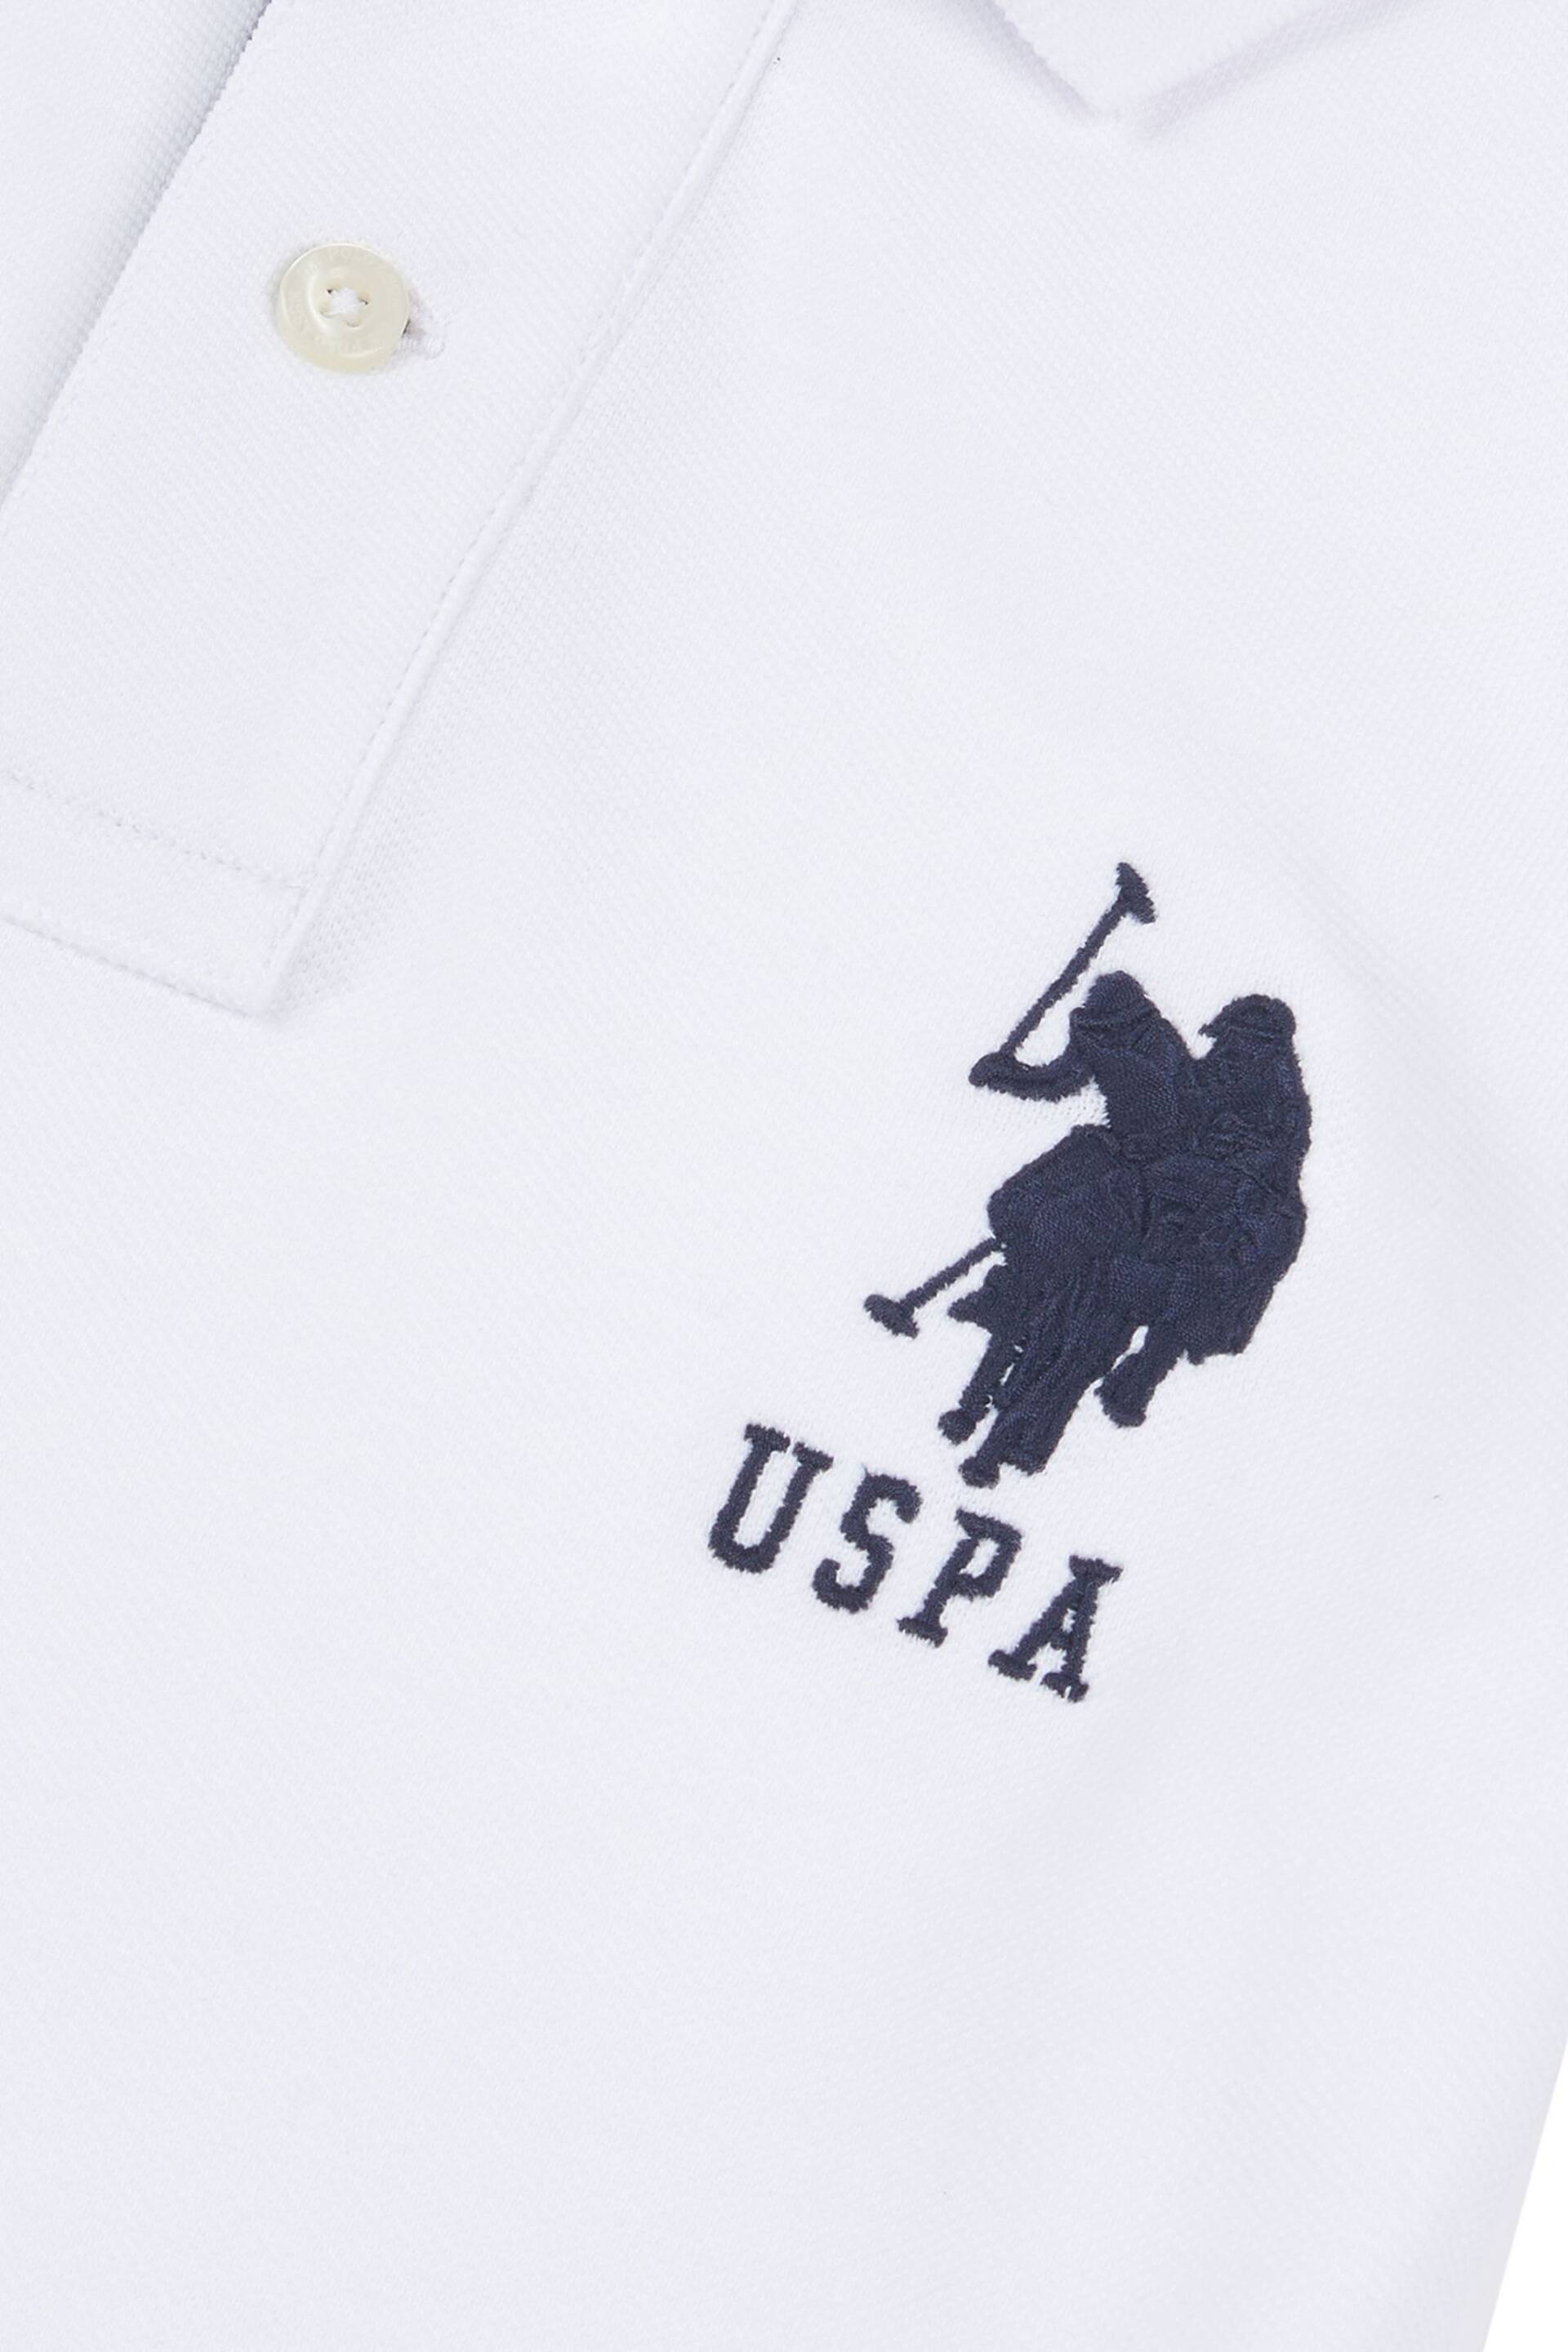 U.S. Polo Assn. Boys Blue Player 3 Pique Polo Shirt - Image 7 of 7